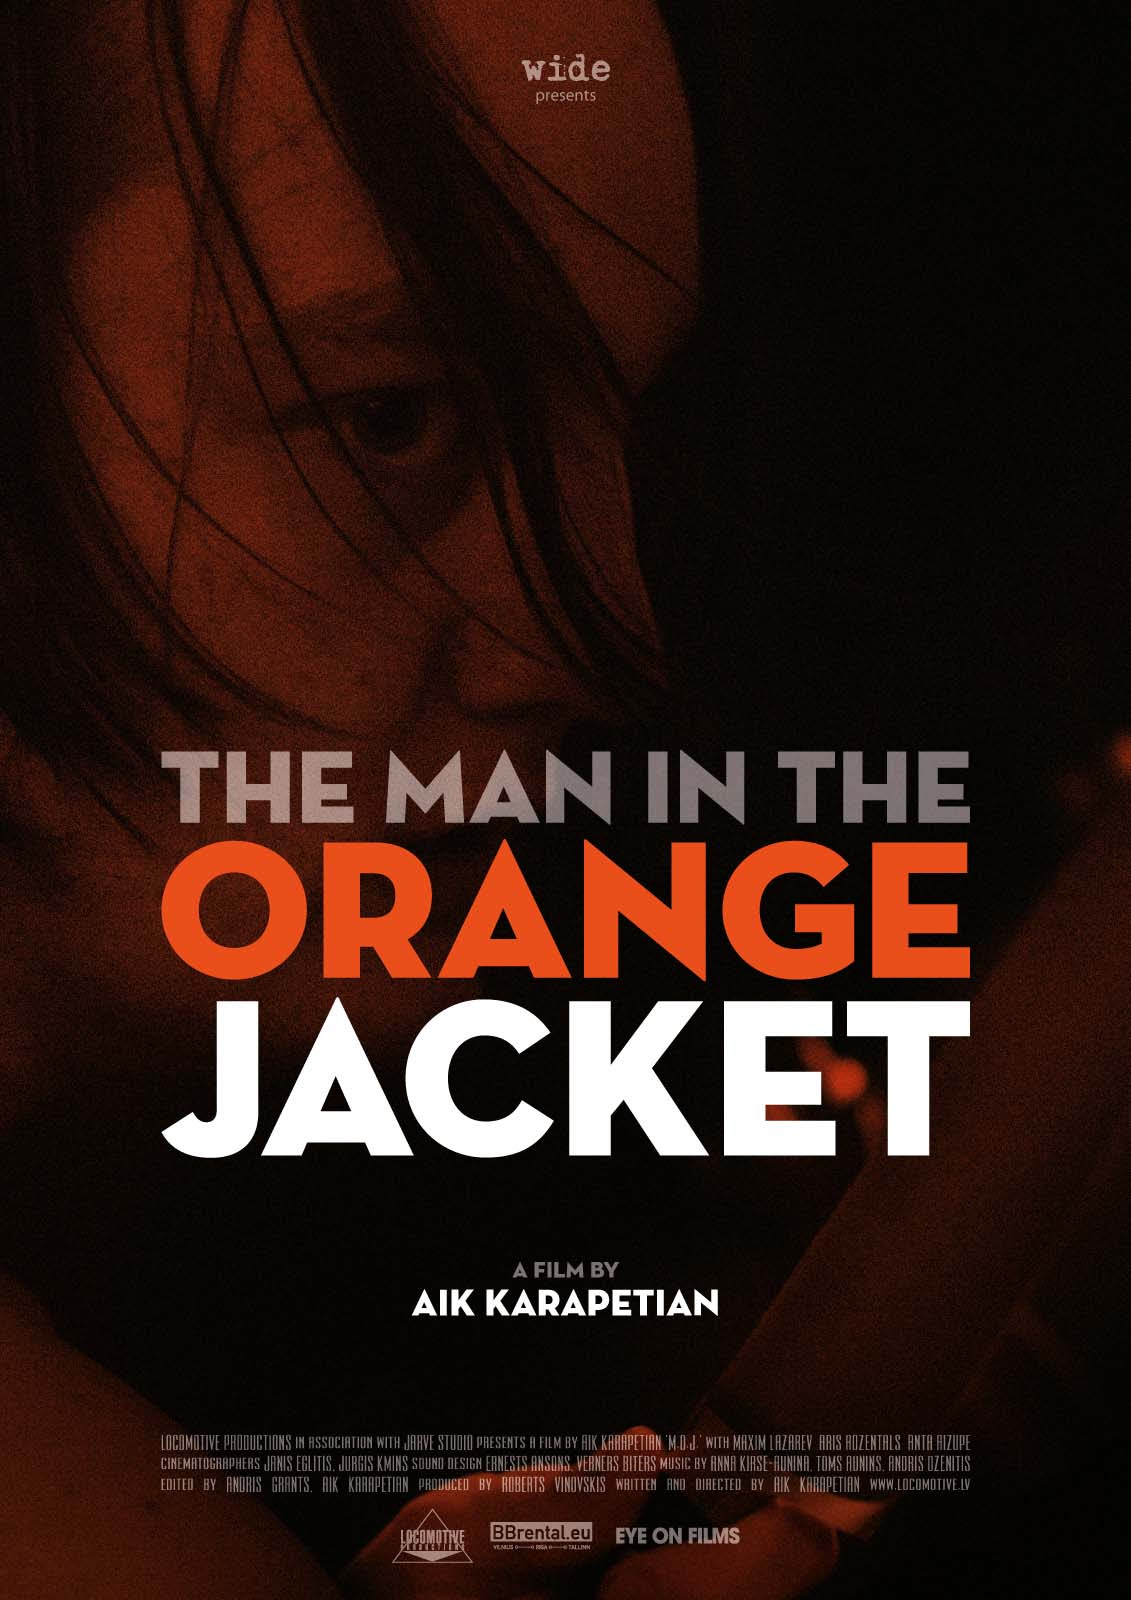 The Man in the Orange Jacket by Aik Karapetian